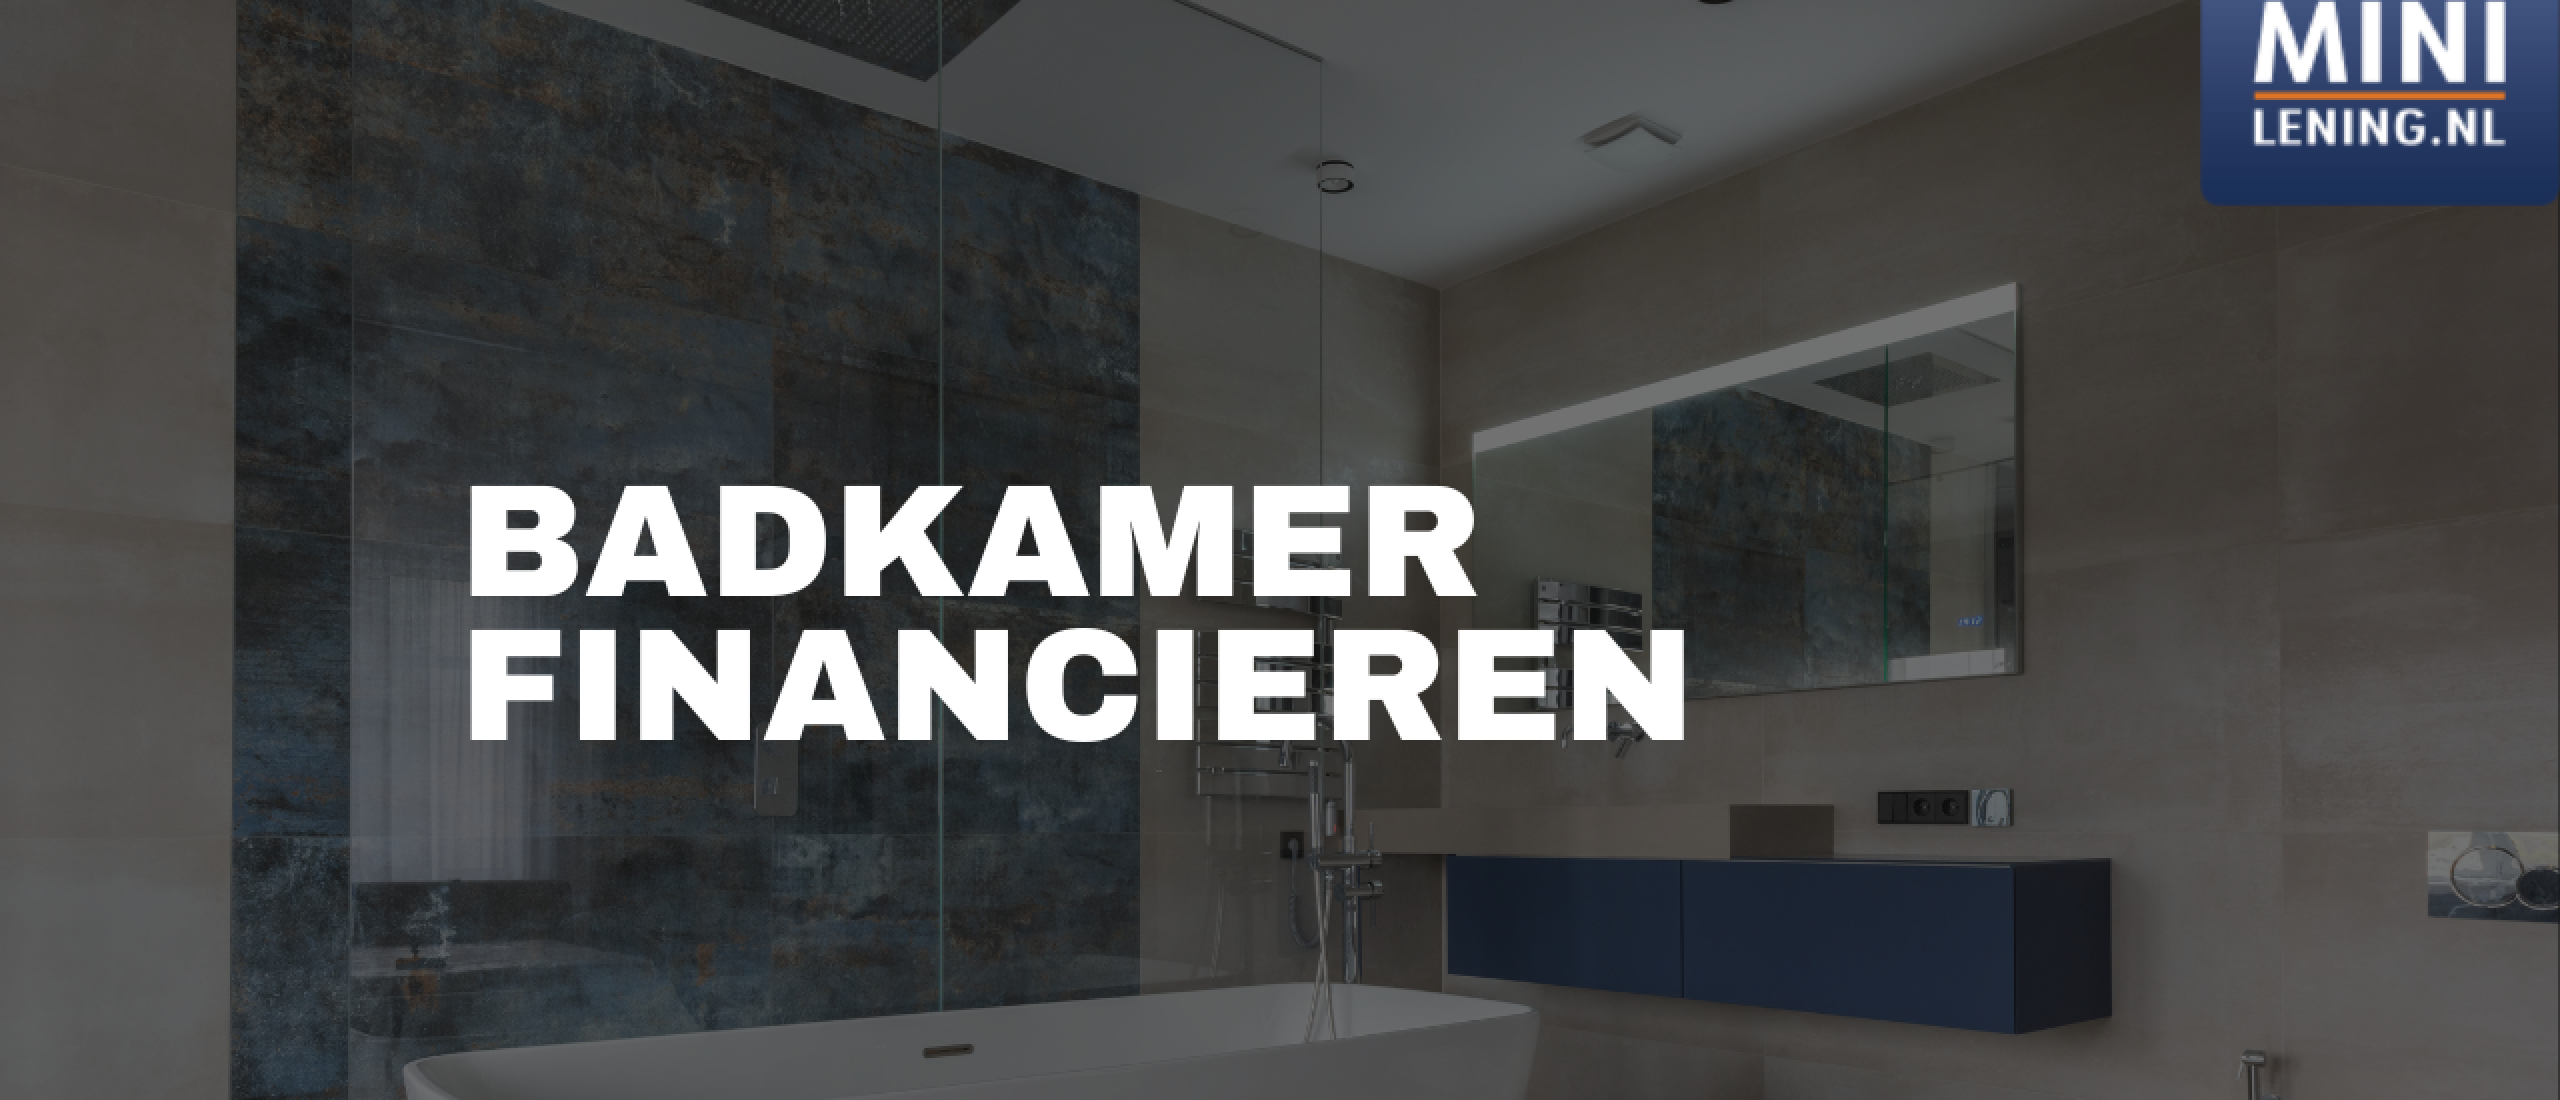 Badkamer Financieren: Alle Lening Opties op Rij | Minilening.nl